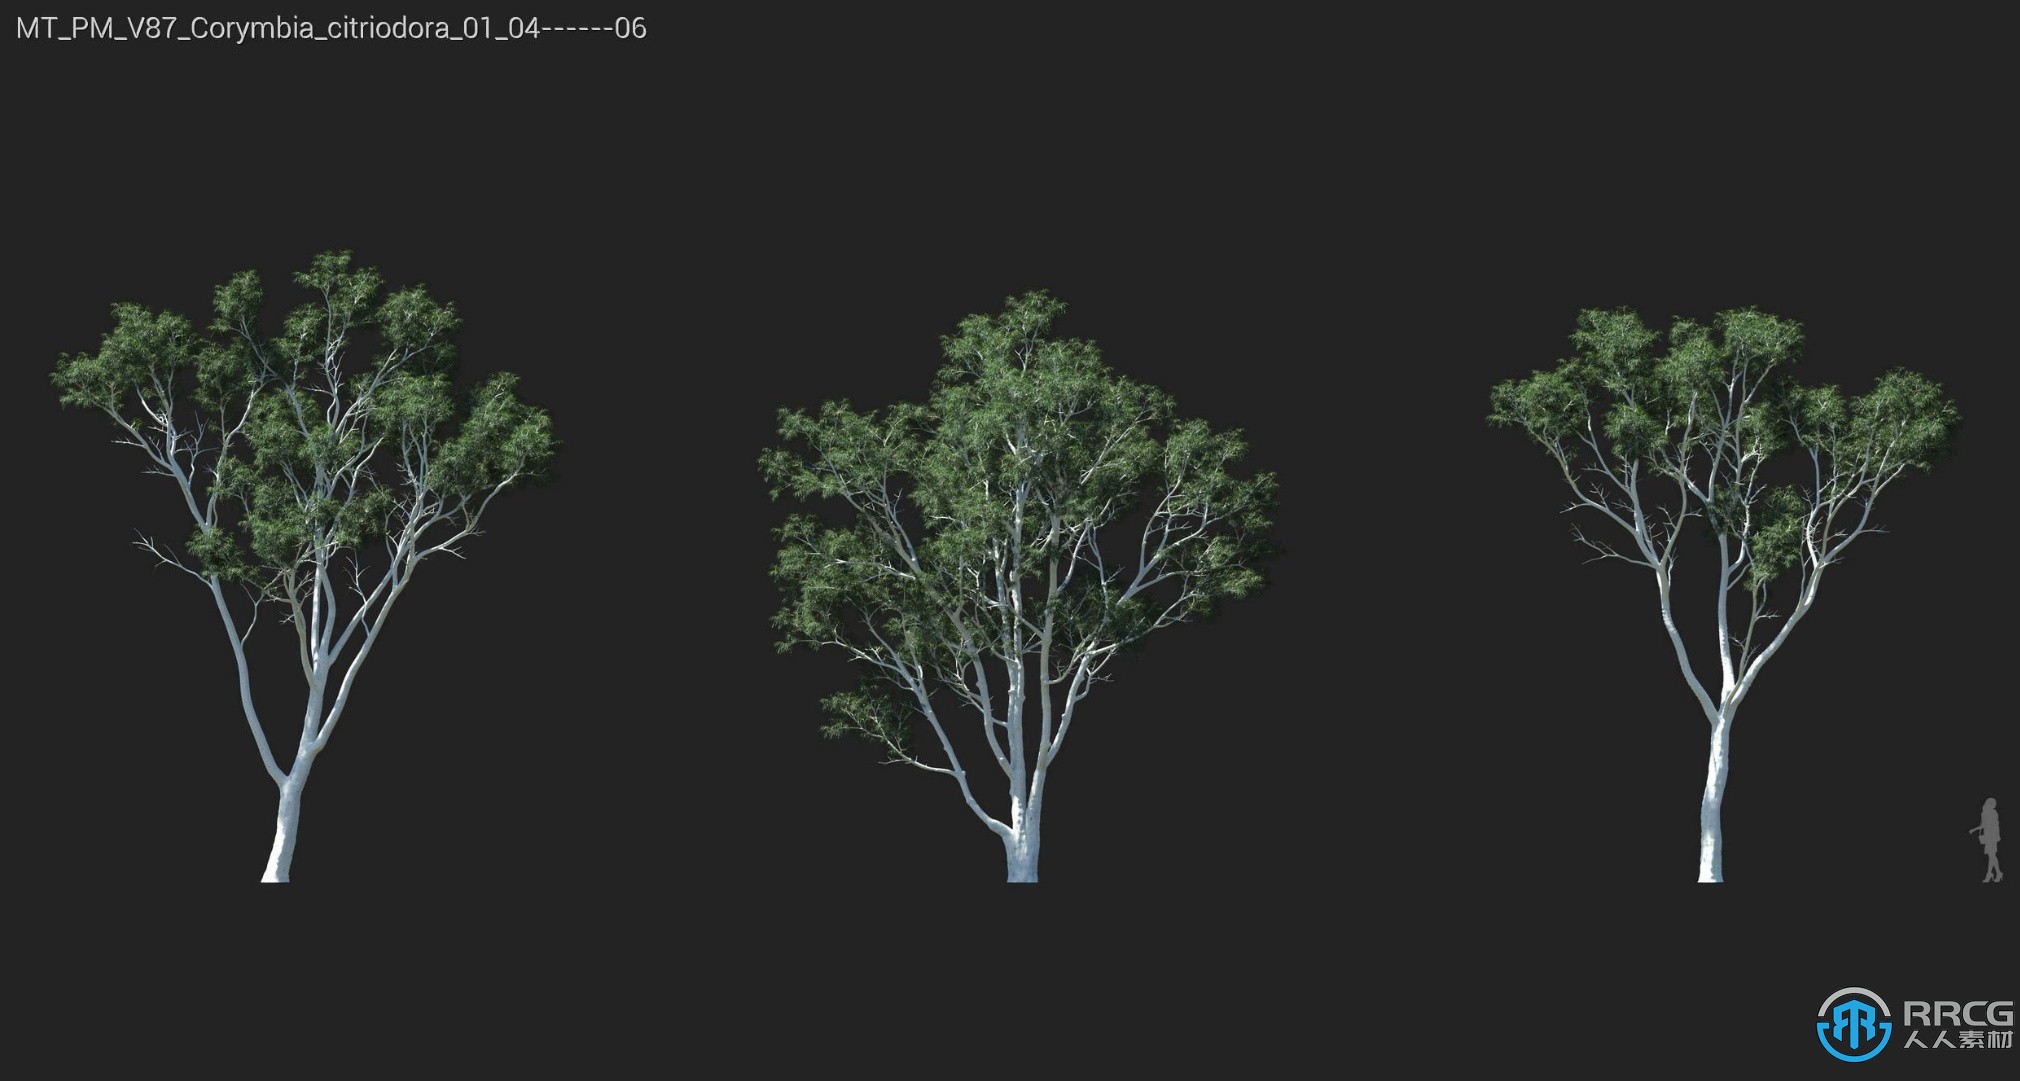 72组常青橡树挪威枫树霍尔姆橡树等植物3D模型合集